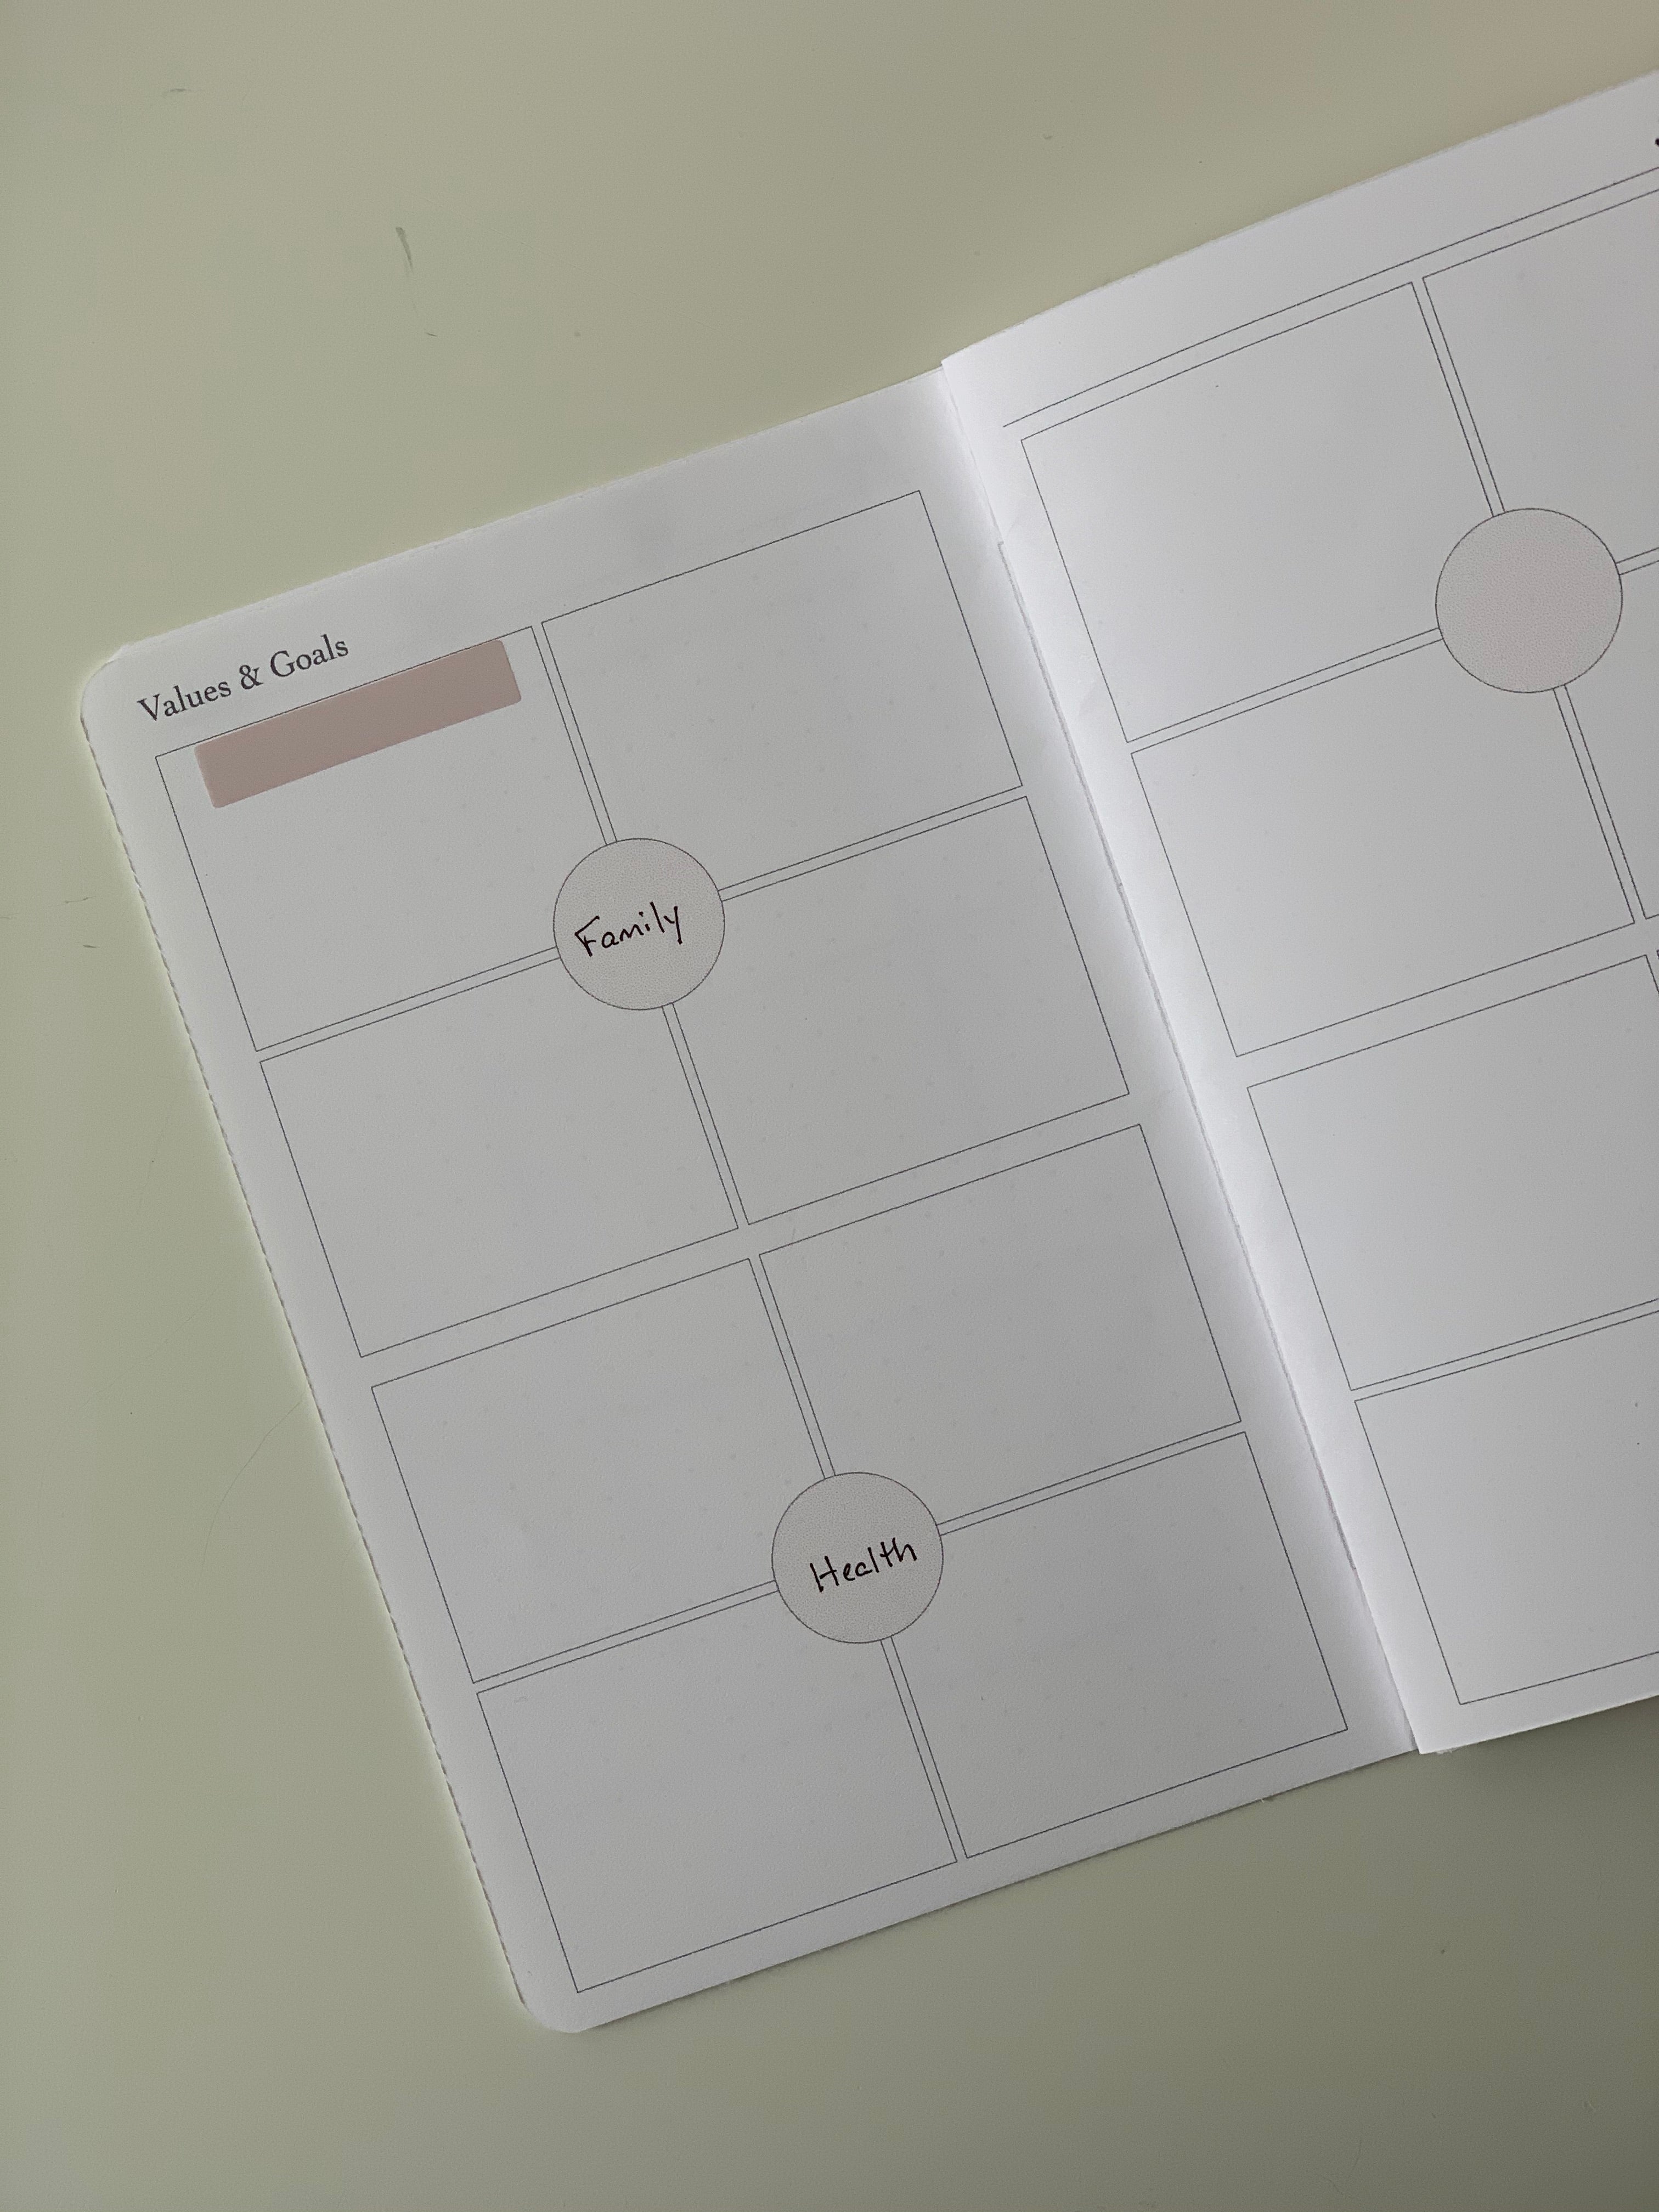 Weekly Calendar Printable - Vertical